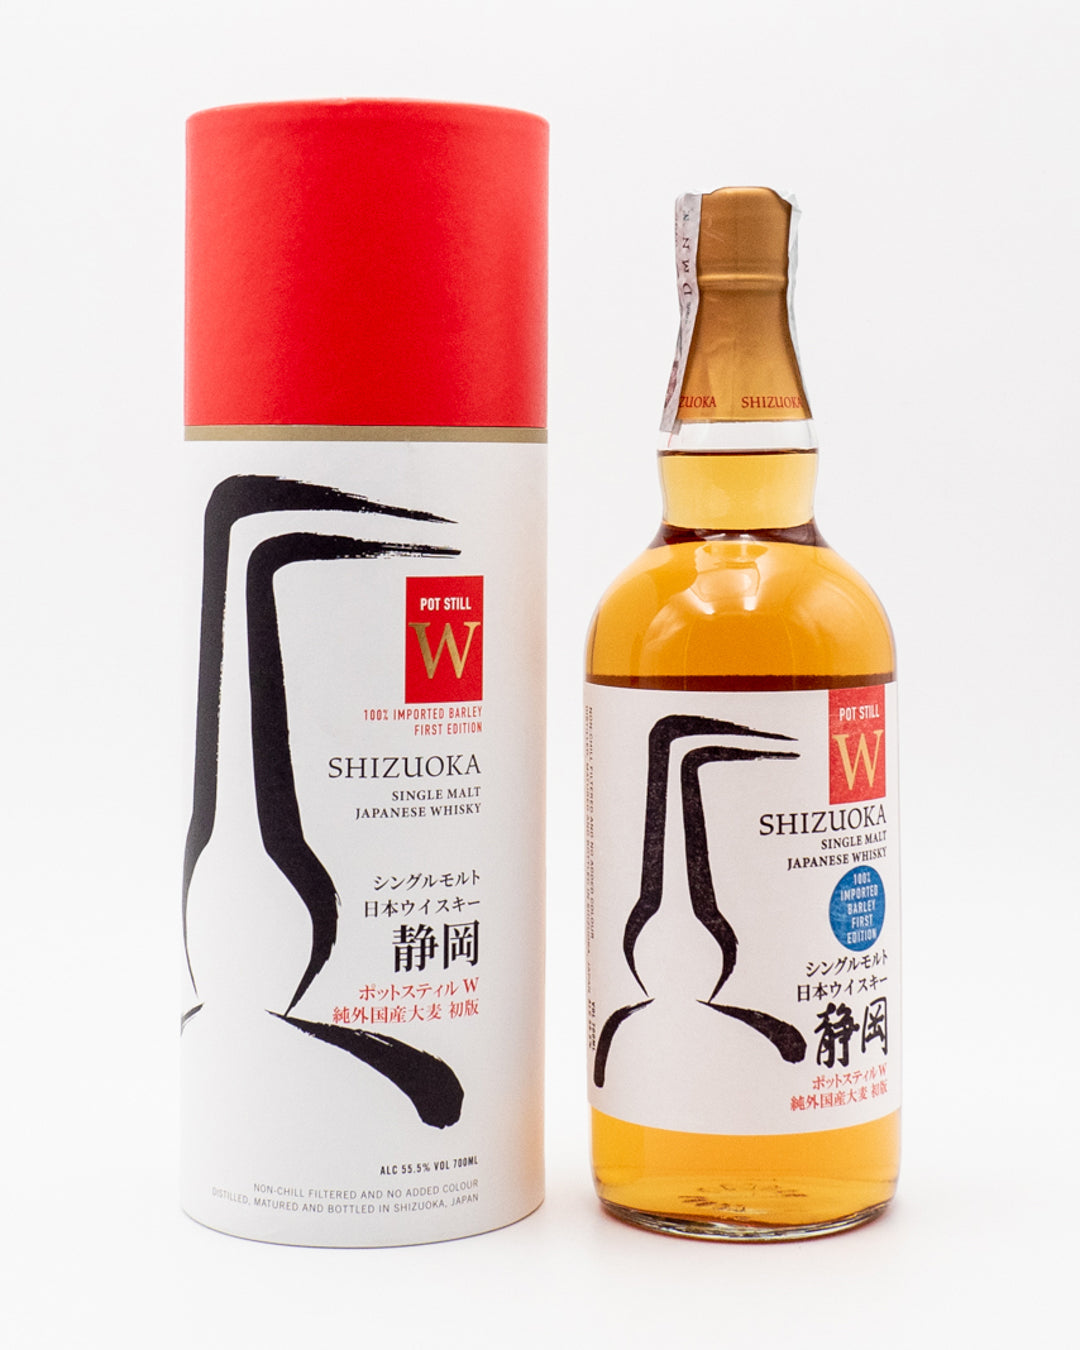 whisky-shizuoka-single-malt-pot-still-w-shizuoka-distillery-55-5-0-70l